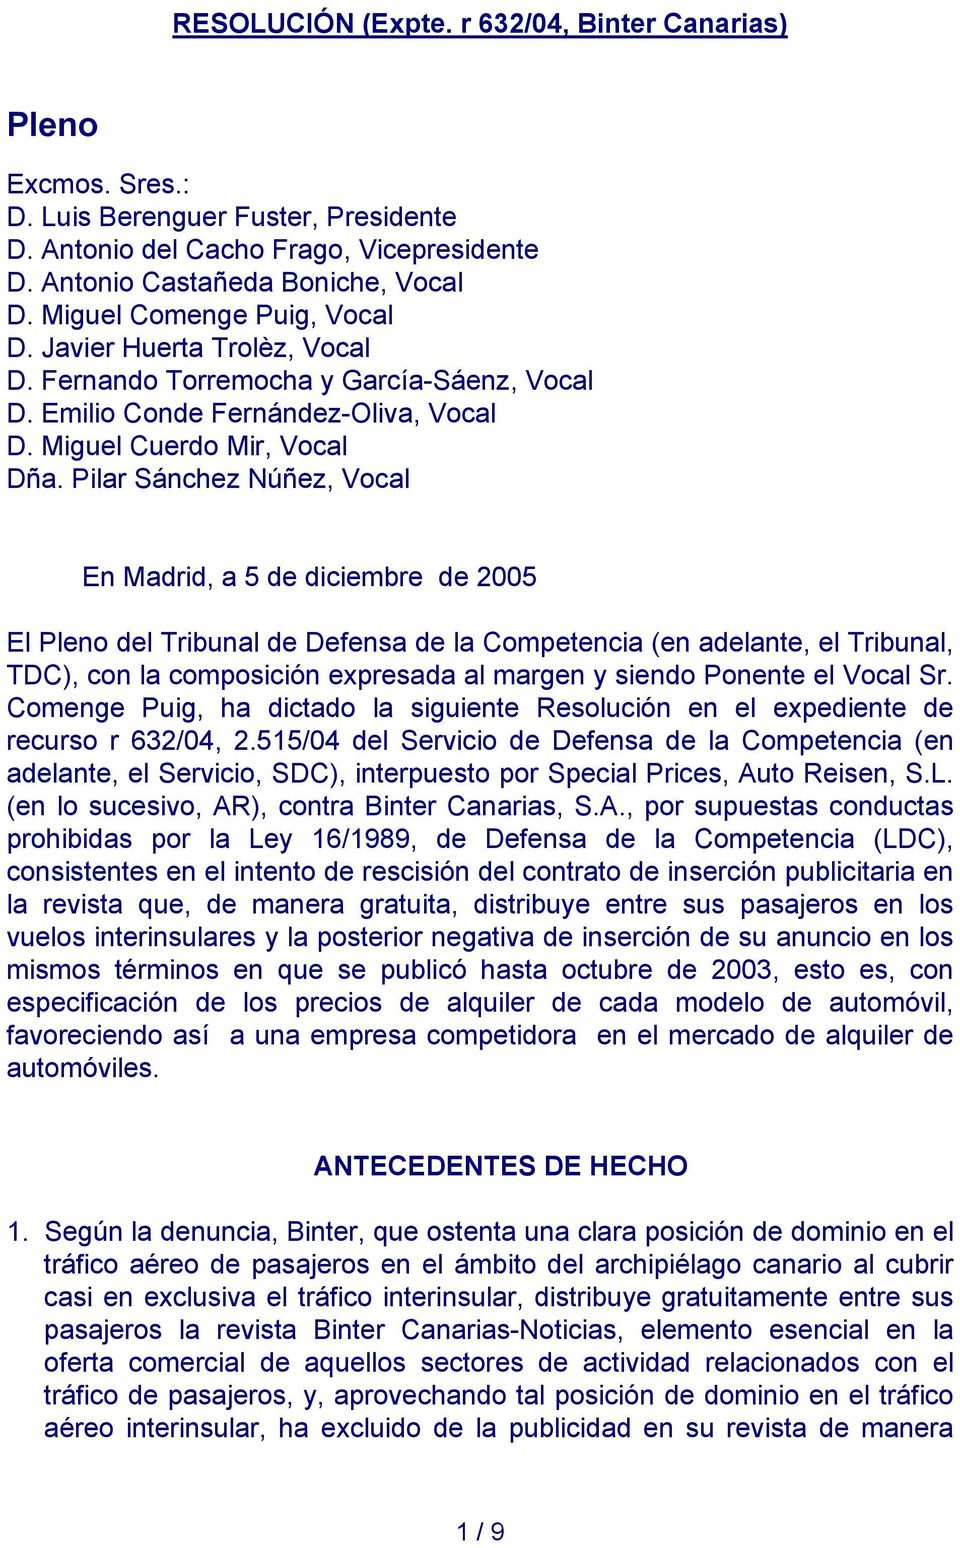 Pilar Sánchez Núñez, Vocal En Madrid, a 5 de diciembre de 2005 El Pleno del Tribunal de Defensa de la Competencia (en adelante, el Tribunal, TDC), con la composición expresada al margen y siendo